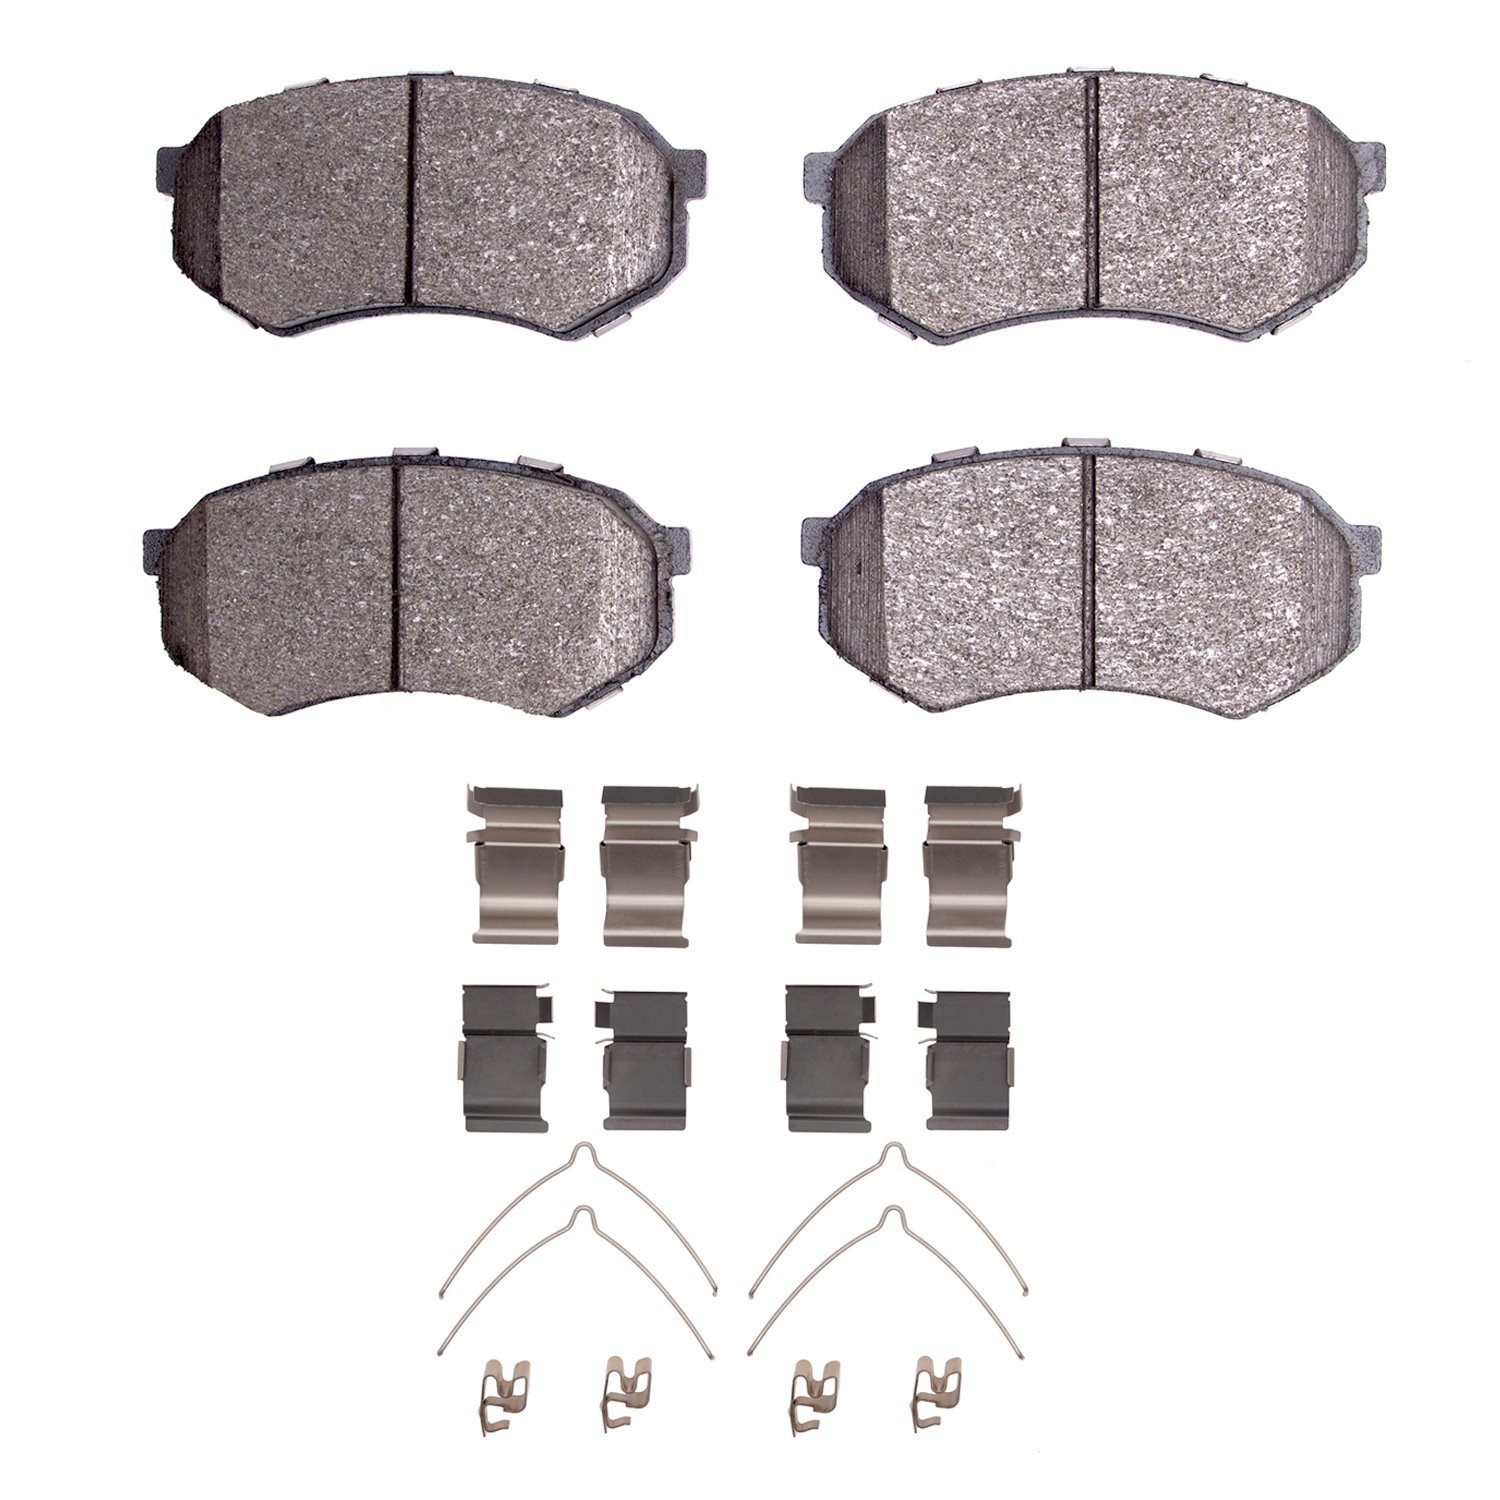 Ceramic Brake Pads & Hardware Kit, 1983-1995 Fits Multiple Makes/Models, Position: Front